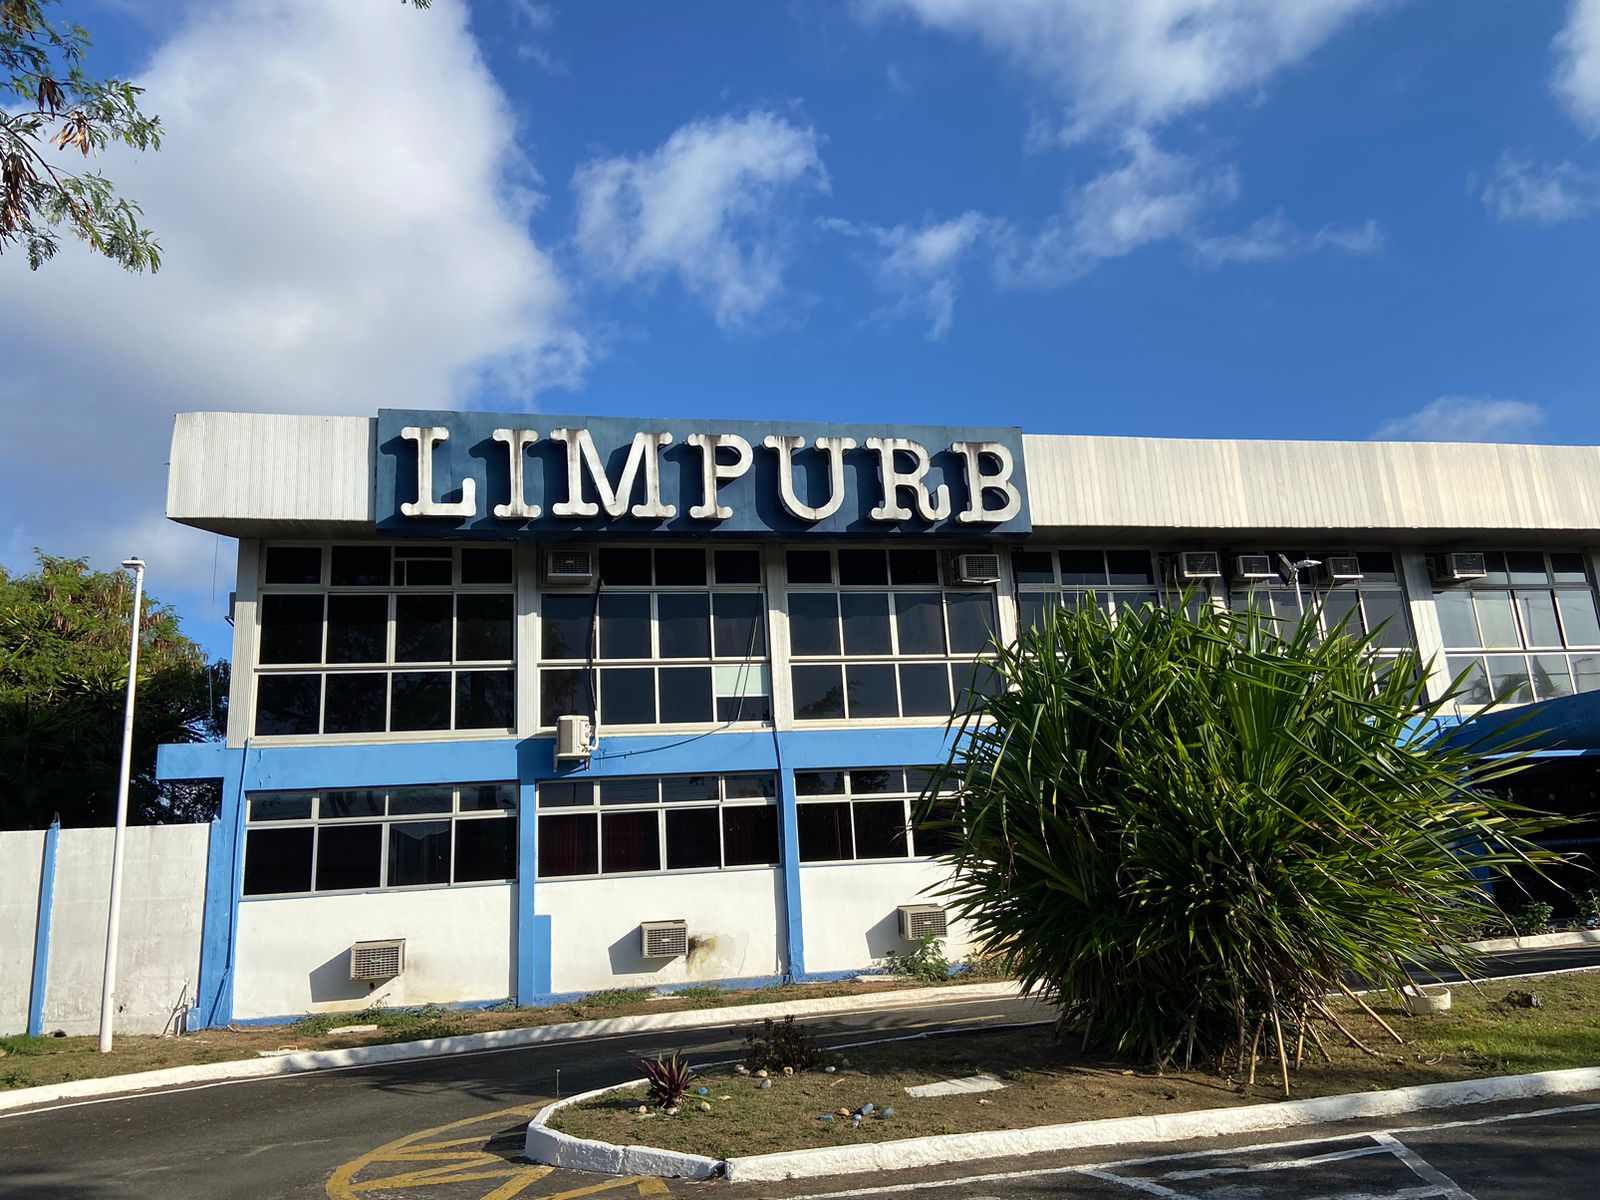 Centro de Arte e Meio Ambiente promove reunião estratégica na LIMPURB para impulsionar a inclusão socioeconômica de catadores em eventos em Salvador